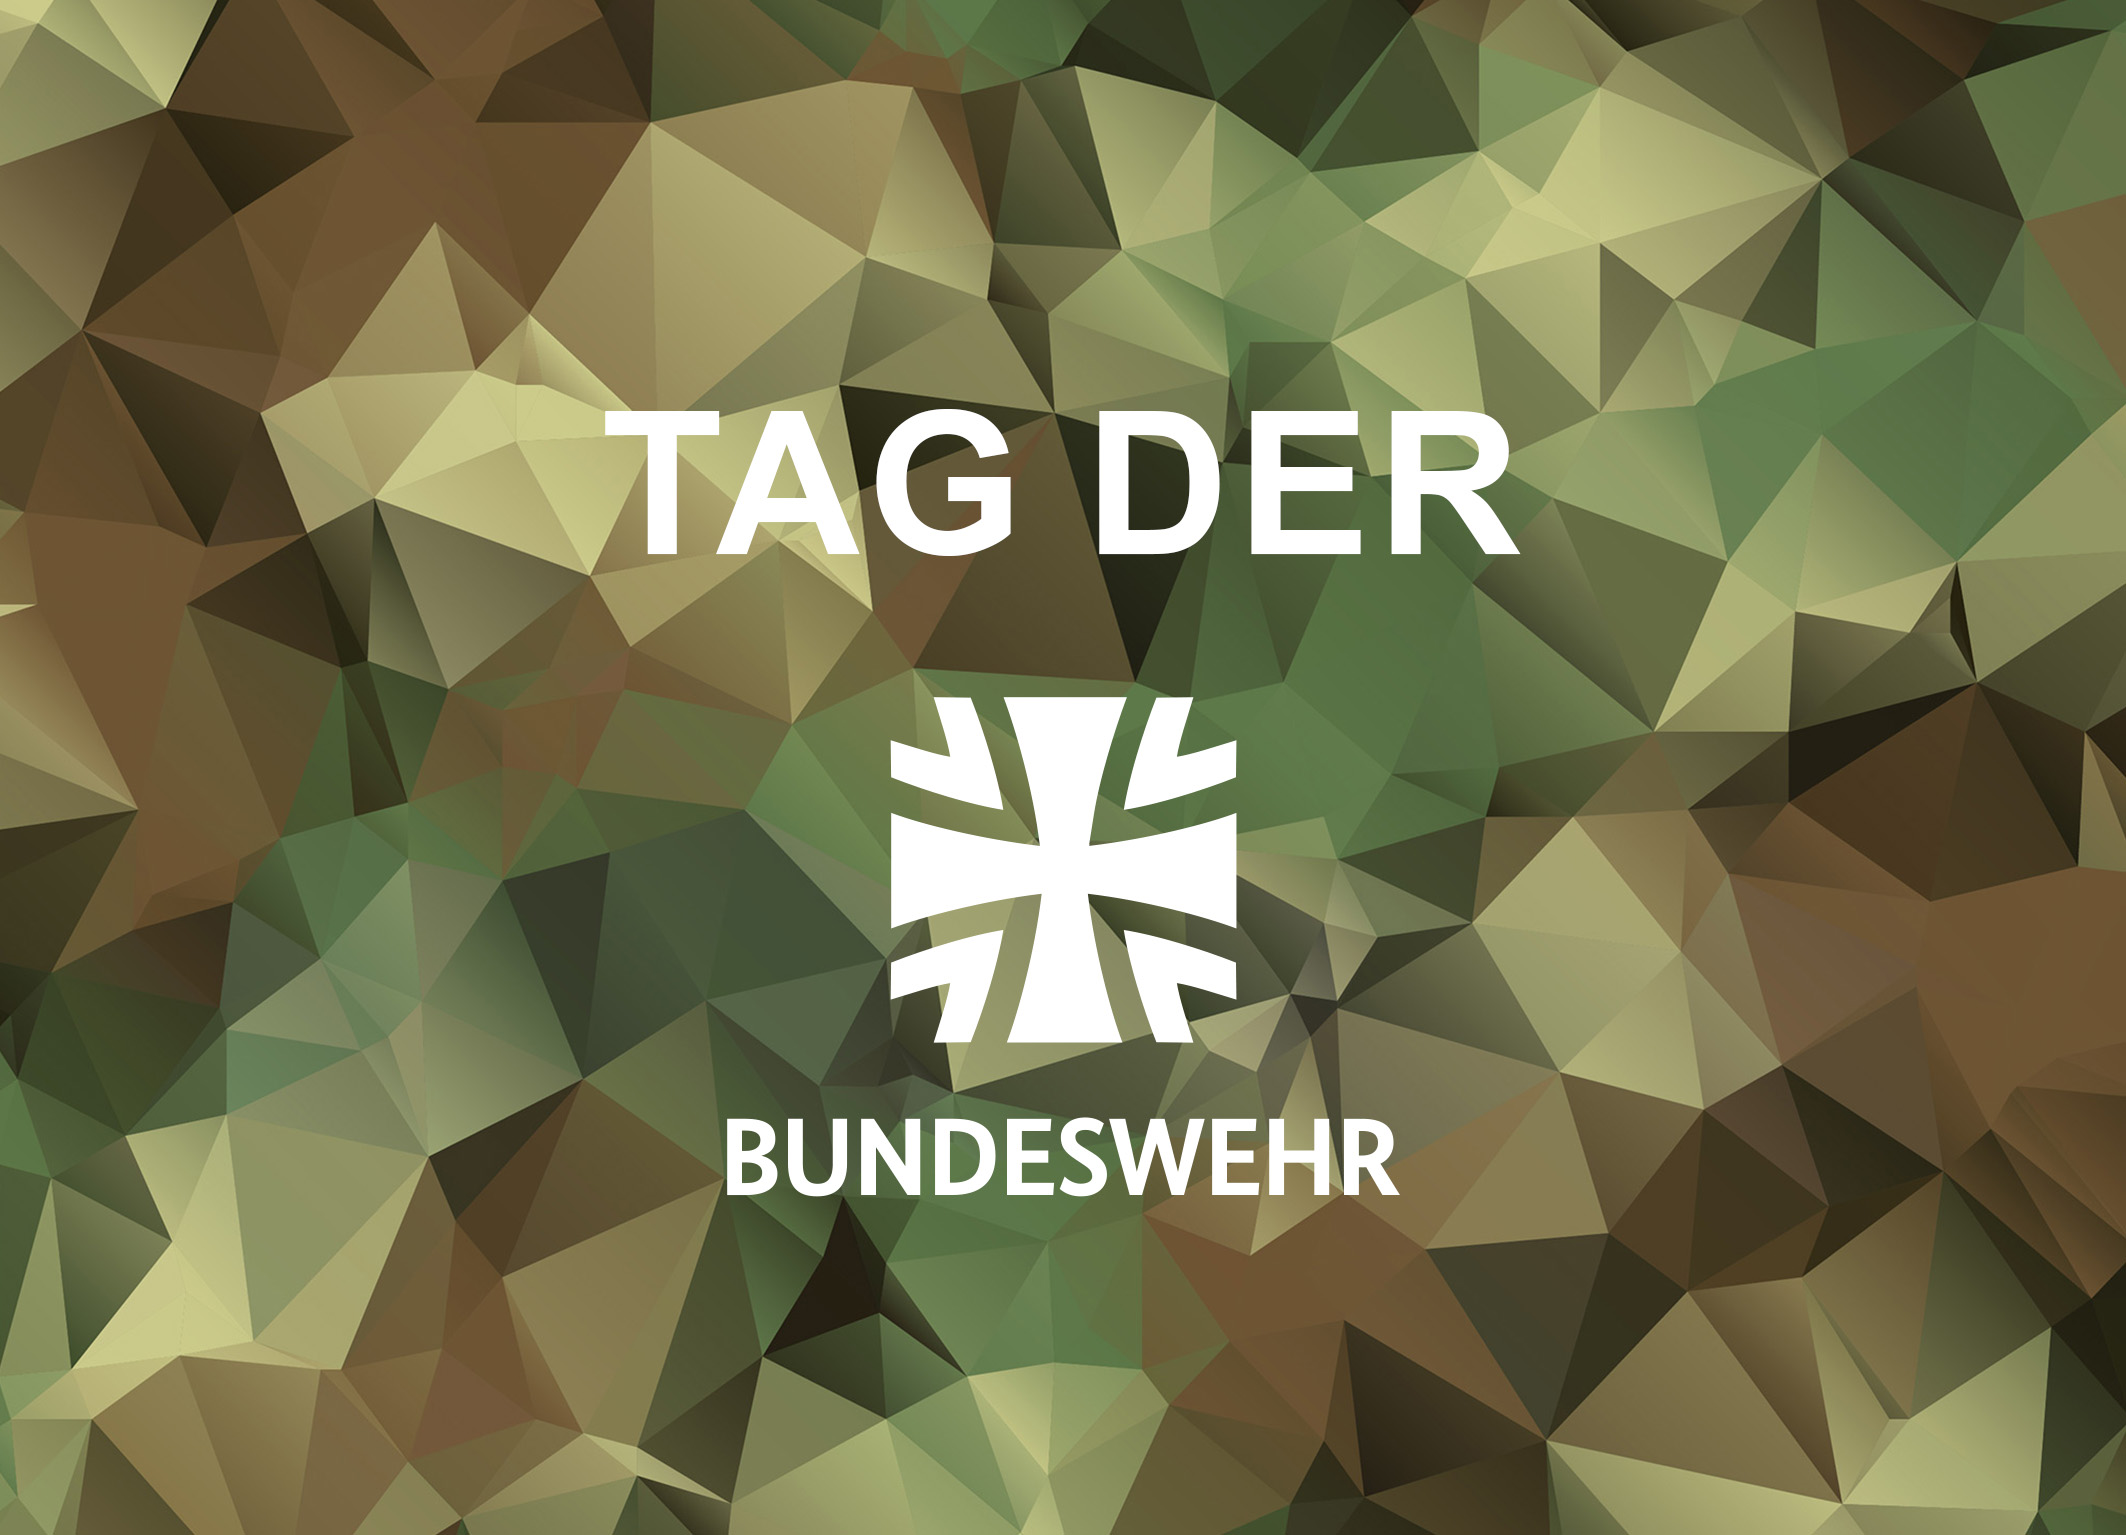 Tag der Bundeswehr 2024